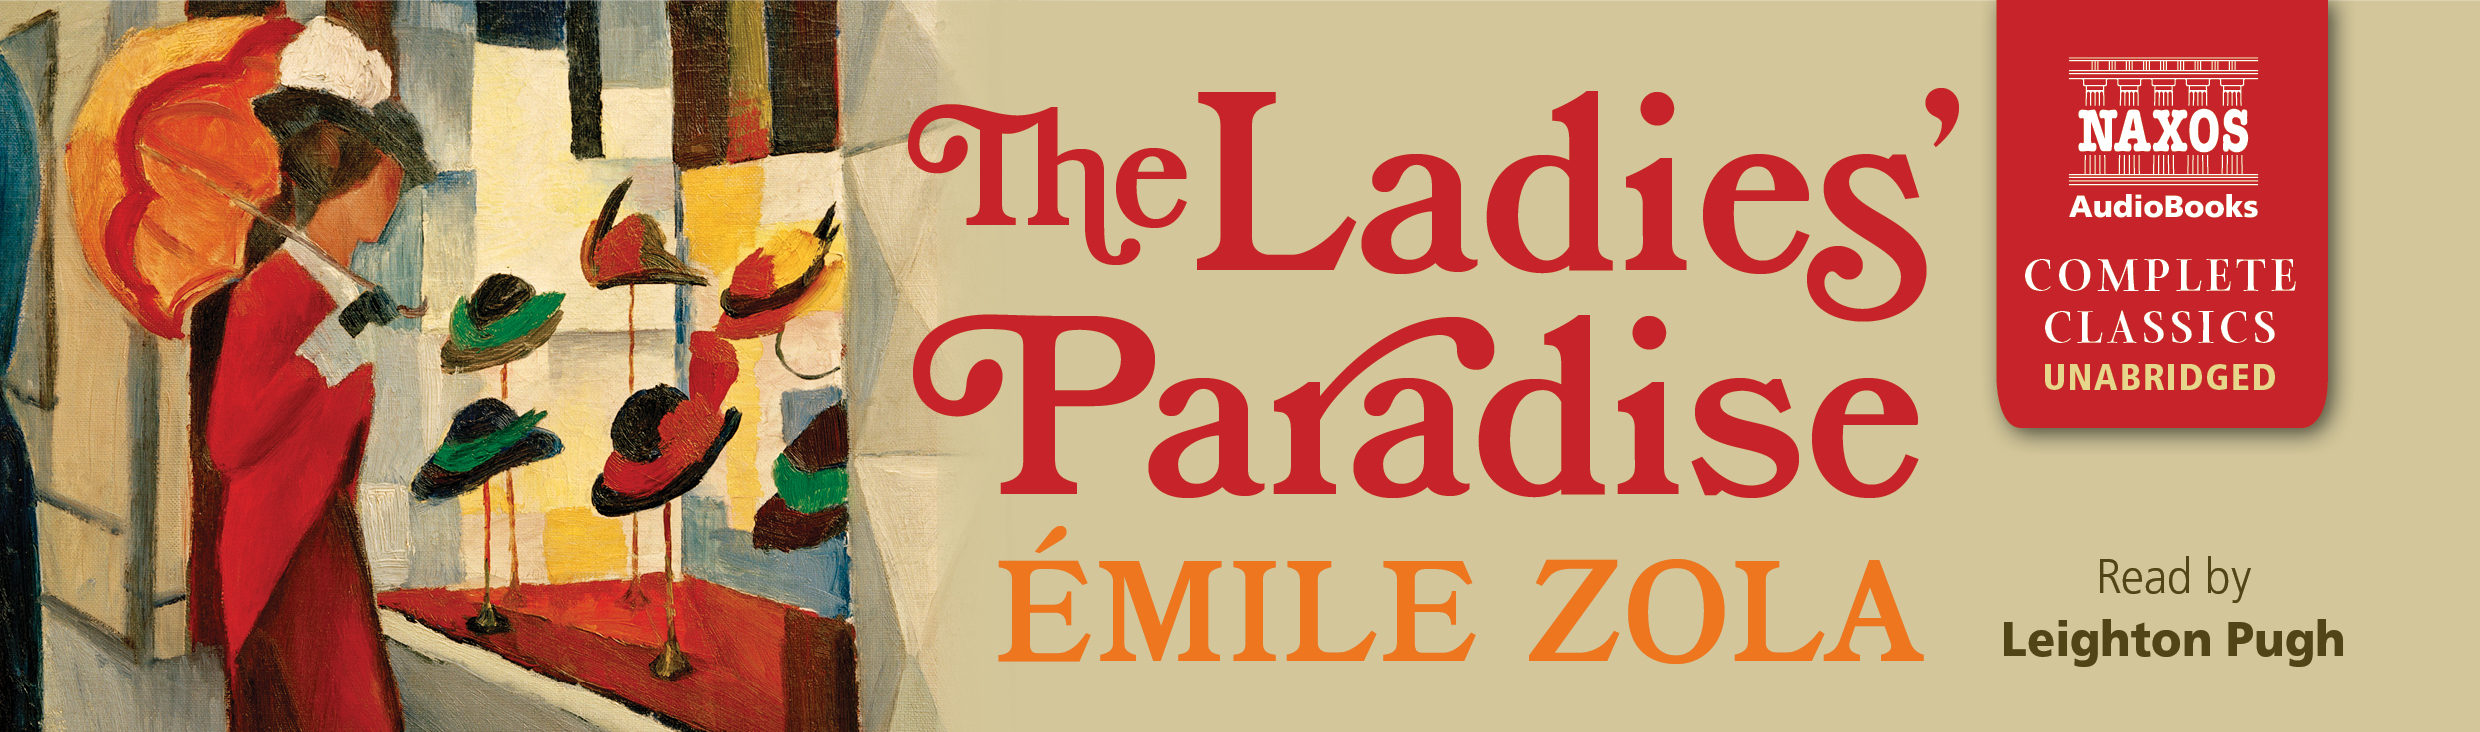 The Ladies' Paradise (unbridged)